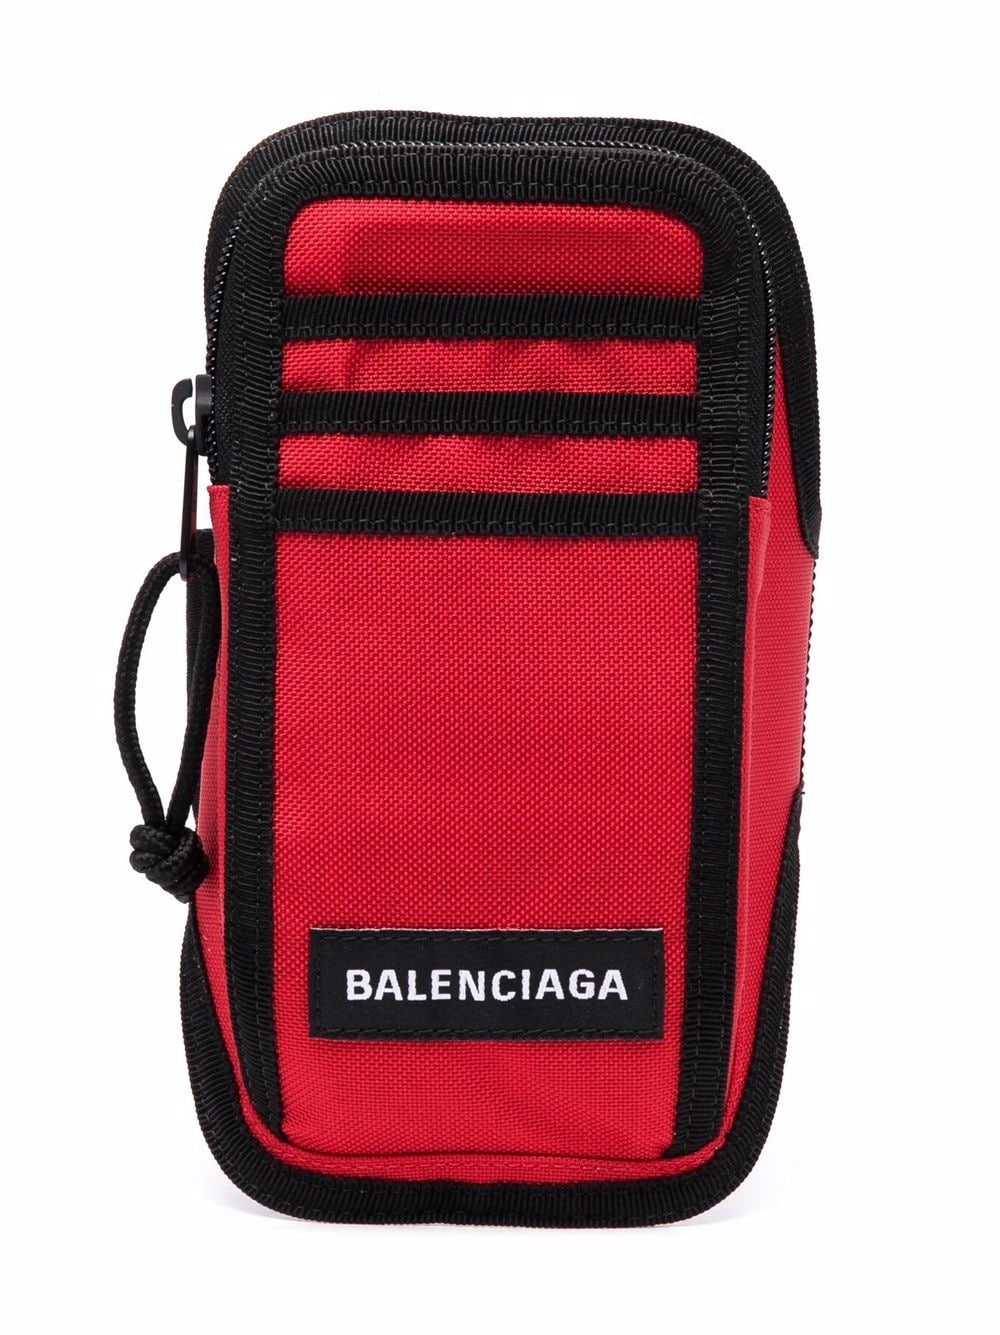 фото Balenciaga чехол для телефона explorer с ремнем на руку